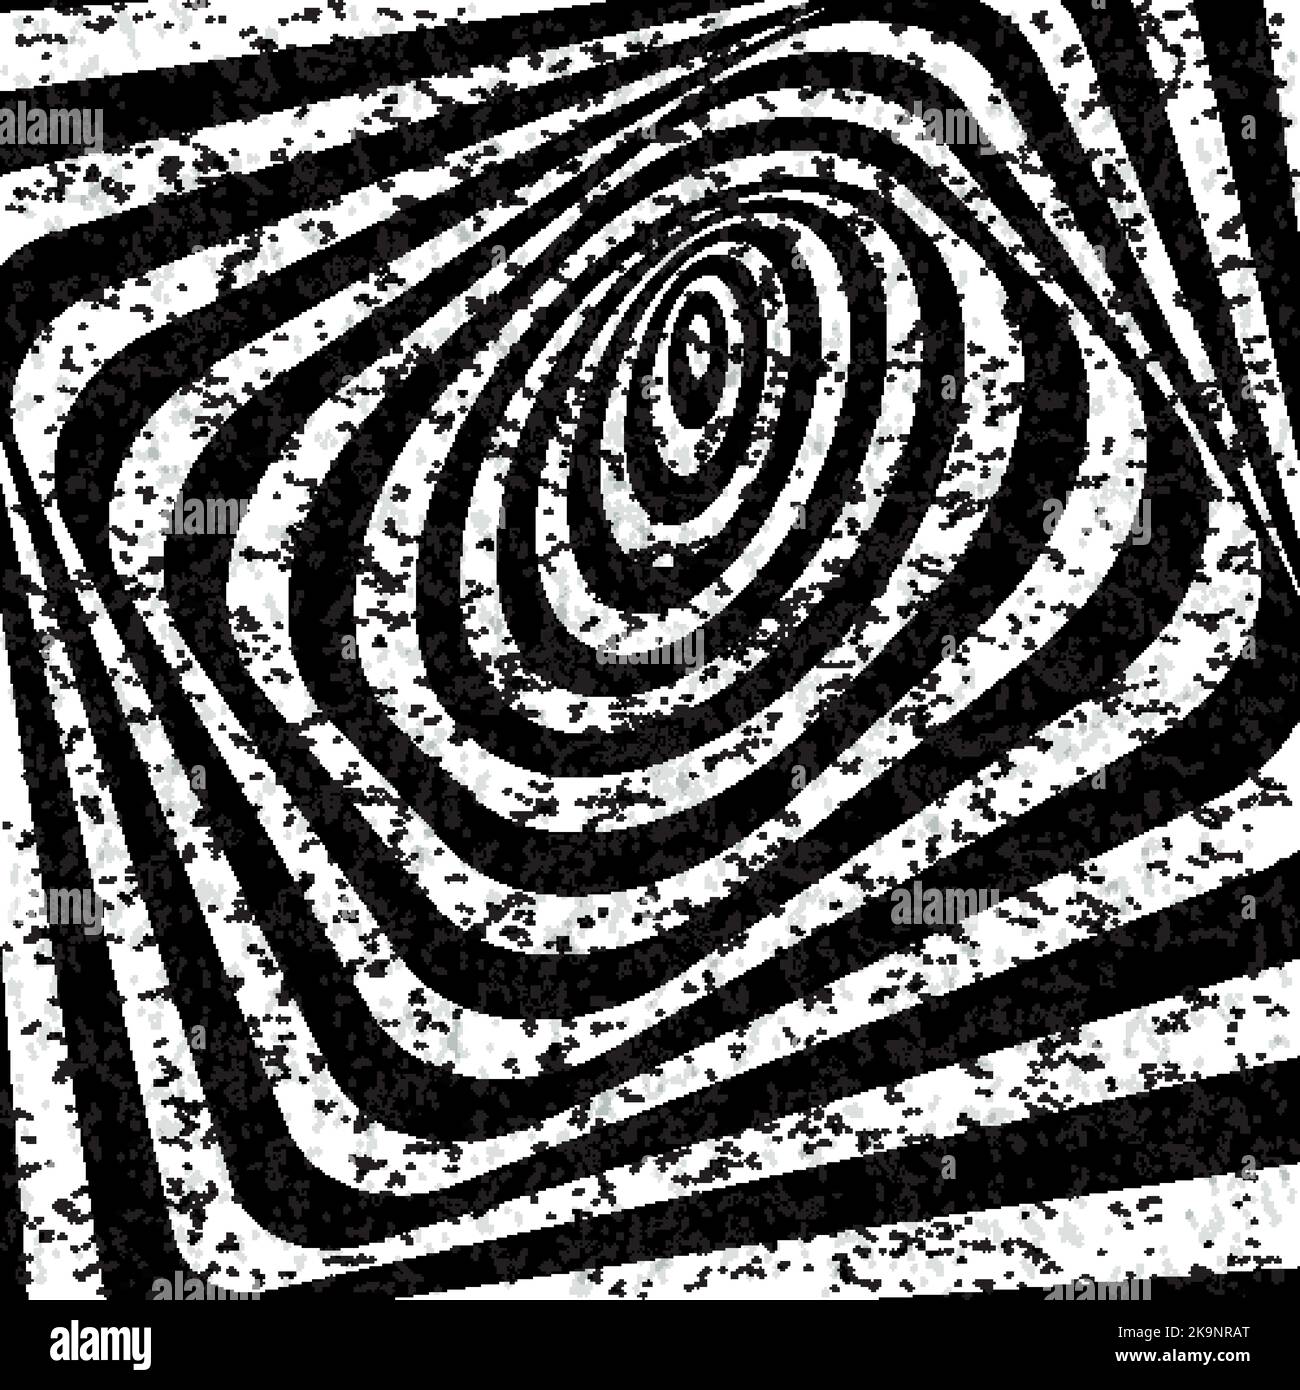 Abstrakter, verdrehter schwarz-weißer Hintergrund. Optische Täuschung einer verzerrten Oberfläche mit gestrichelten Partikeln. Verdrehte Streifen. Stilisierter 3D-Tunnel. Stock Vektor